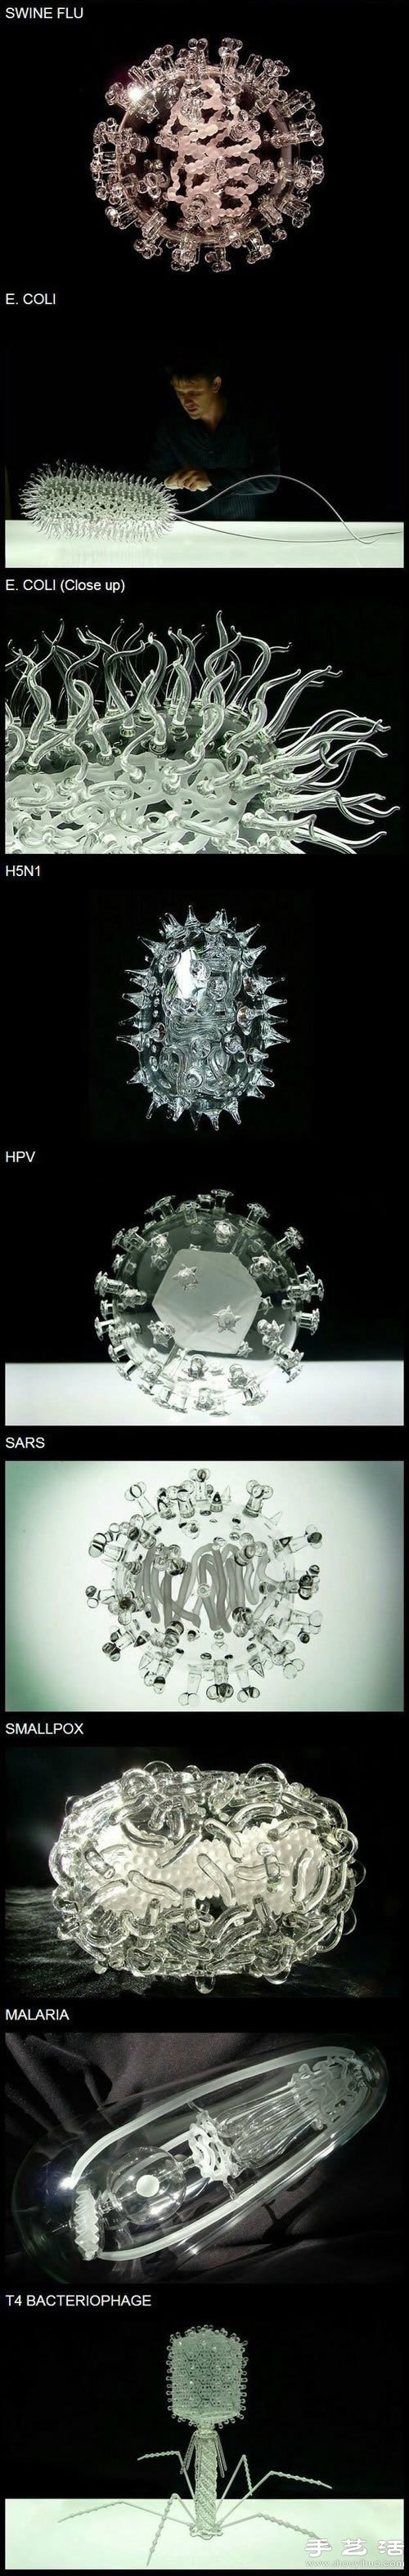 超震撼的玻璃材质病毒模型